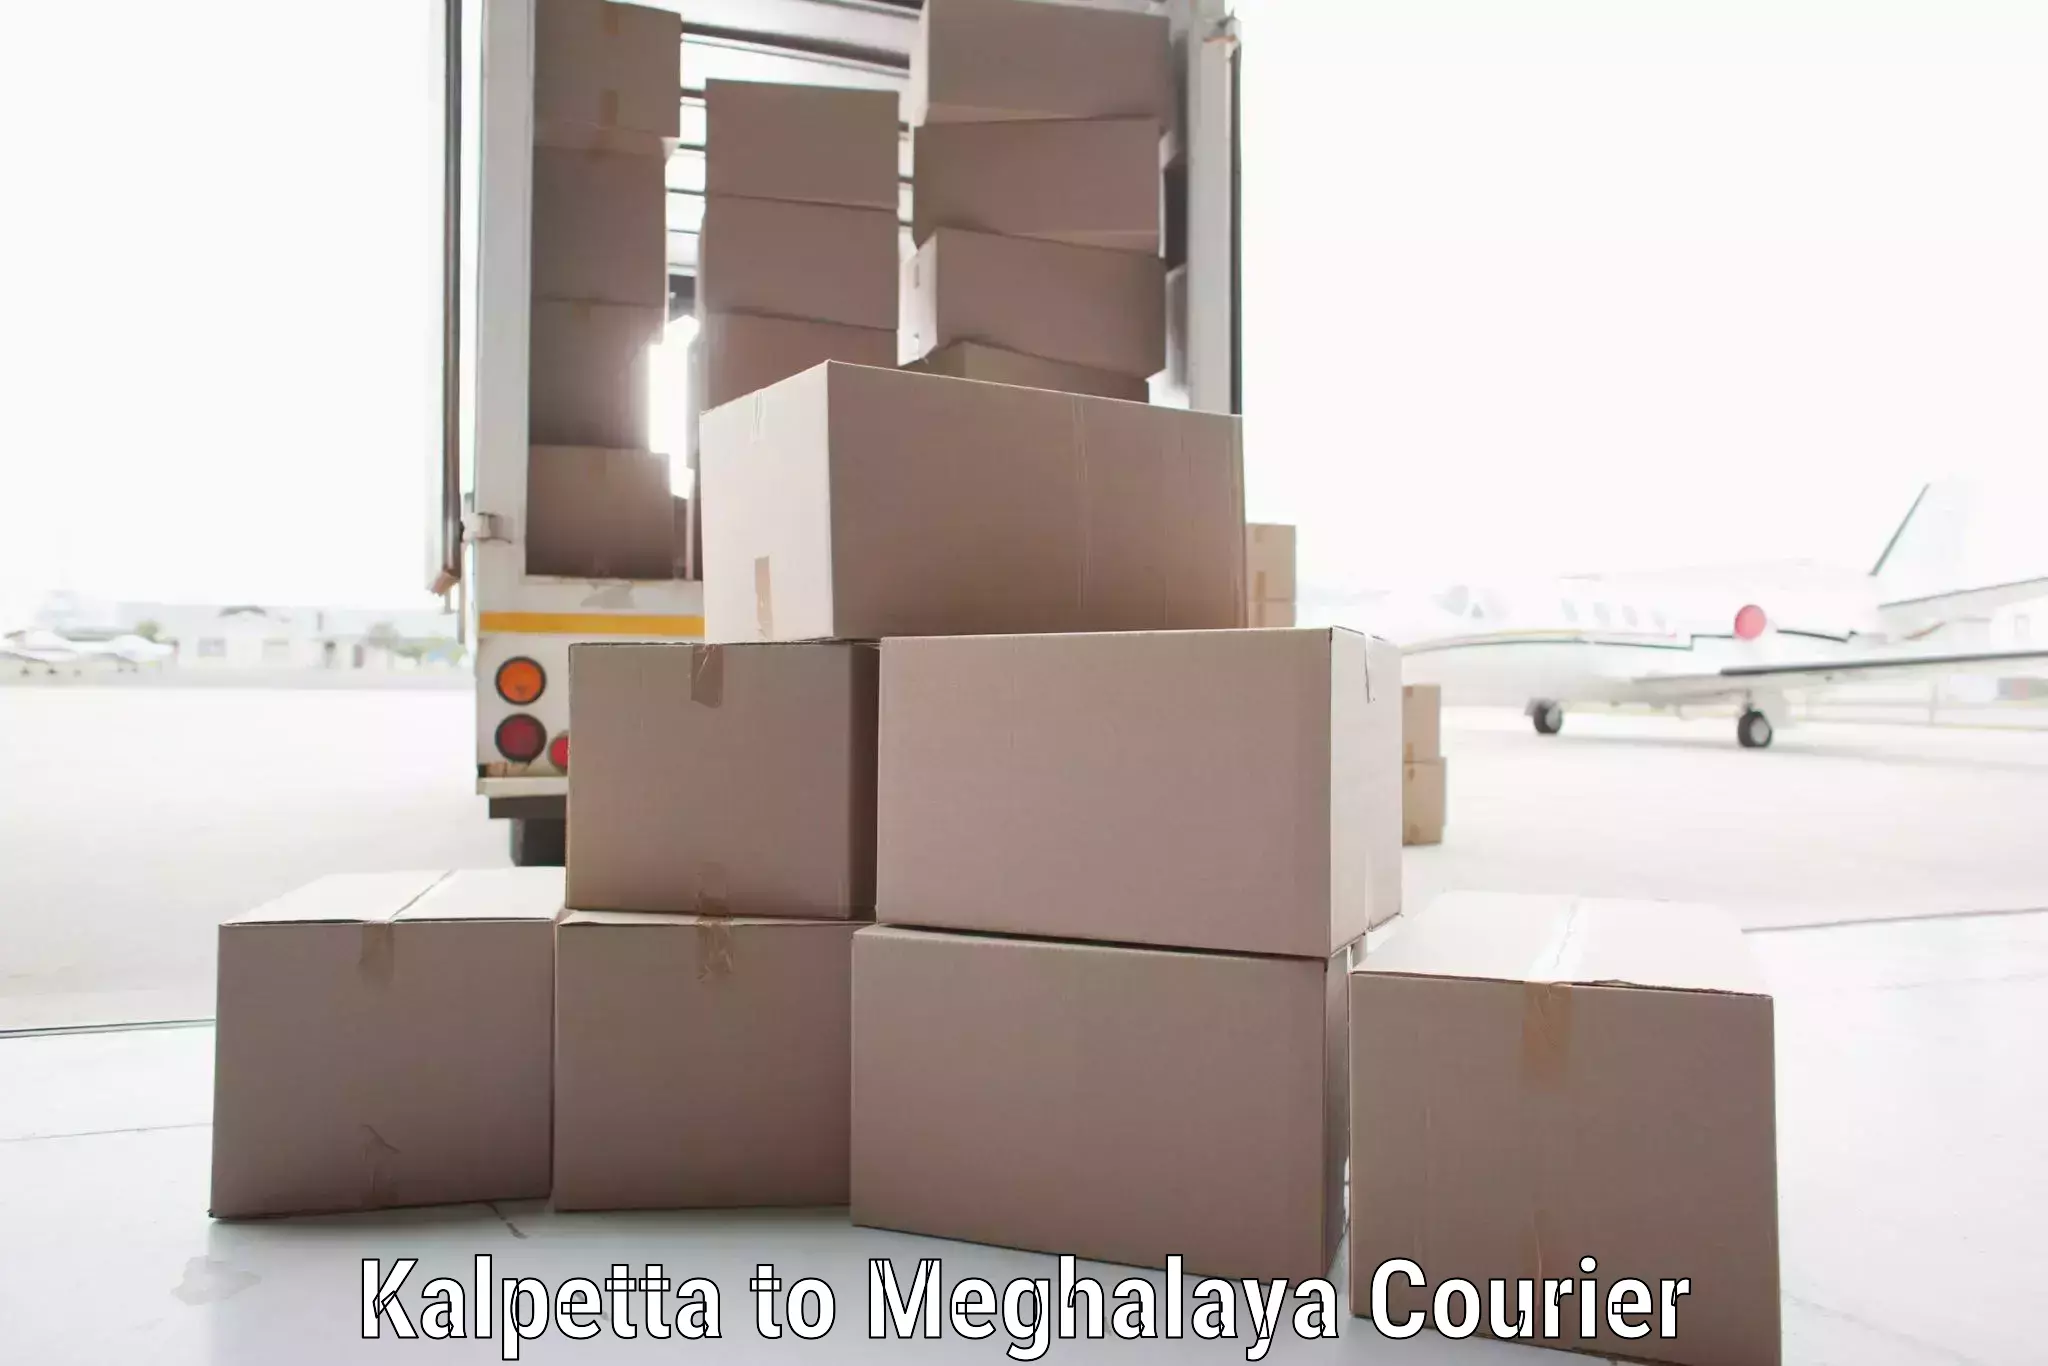 On-demand shipping options Kalpetta to Meghalaya